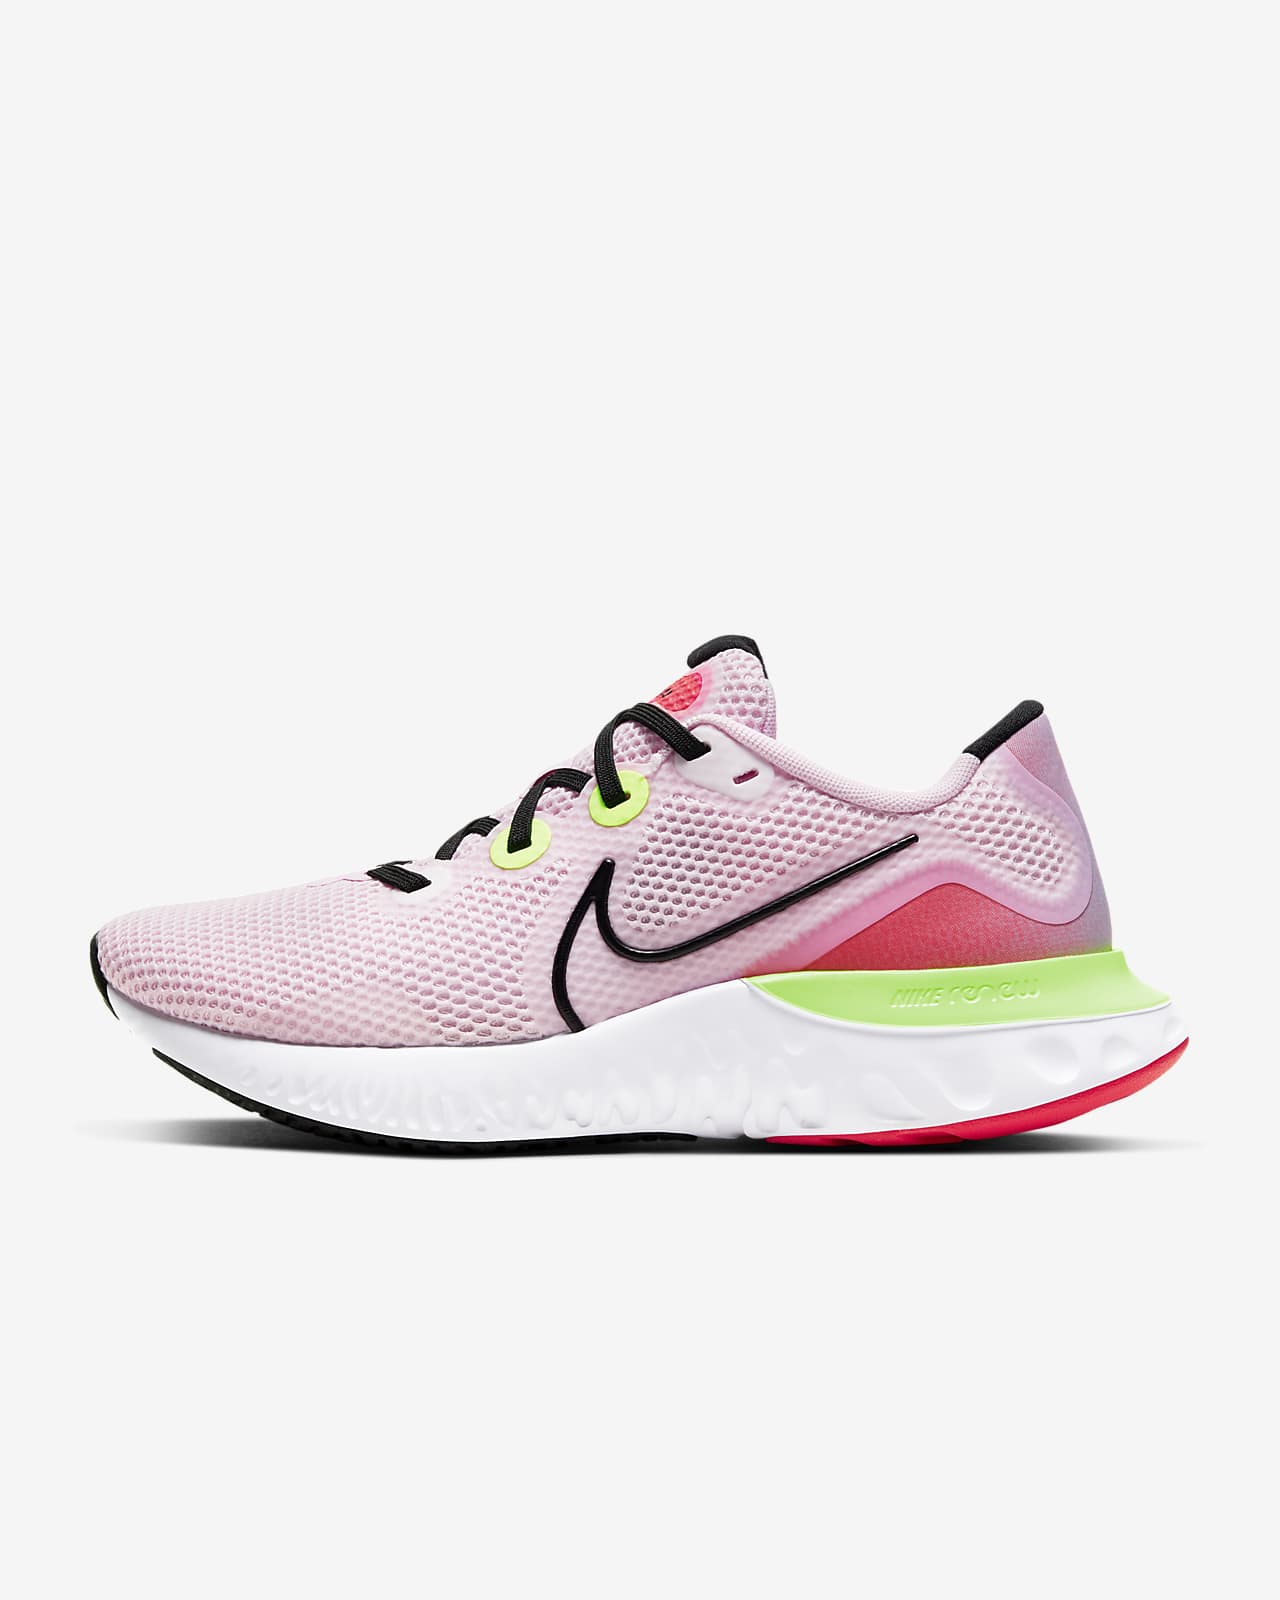 Women's Nike Renew Run 'Pink Foam' $51.97 Free Shipping - Sneaker Steal